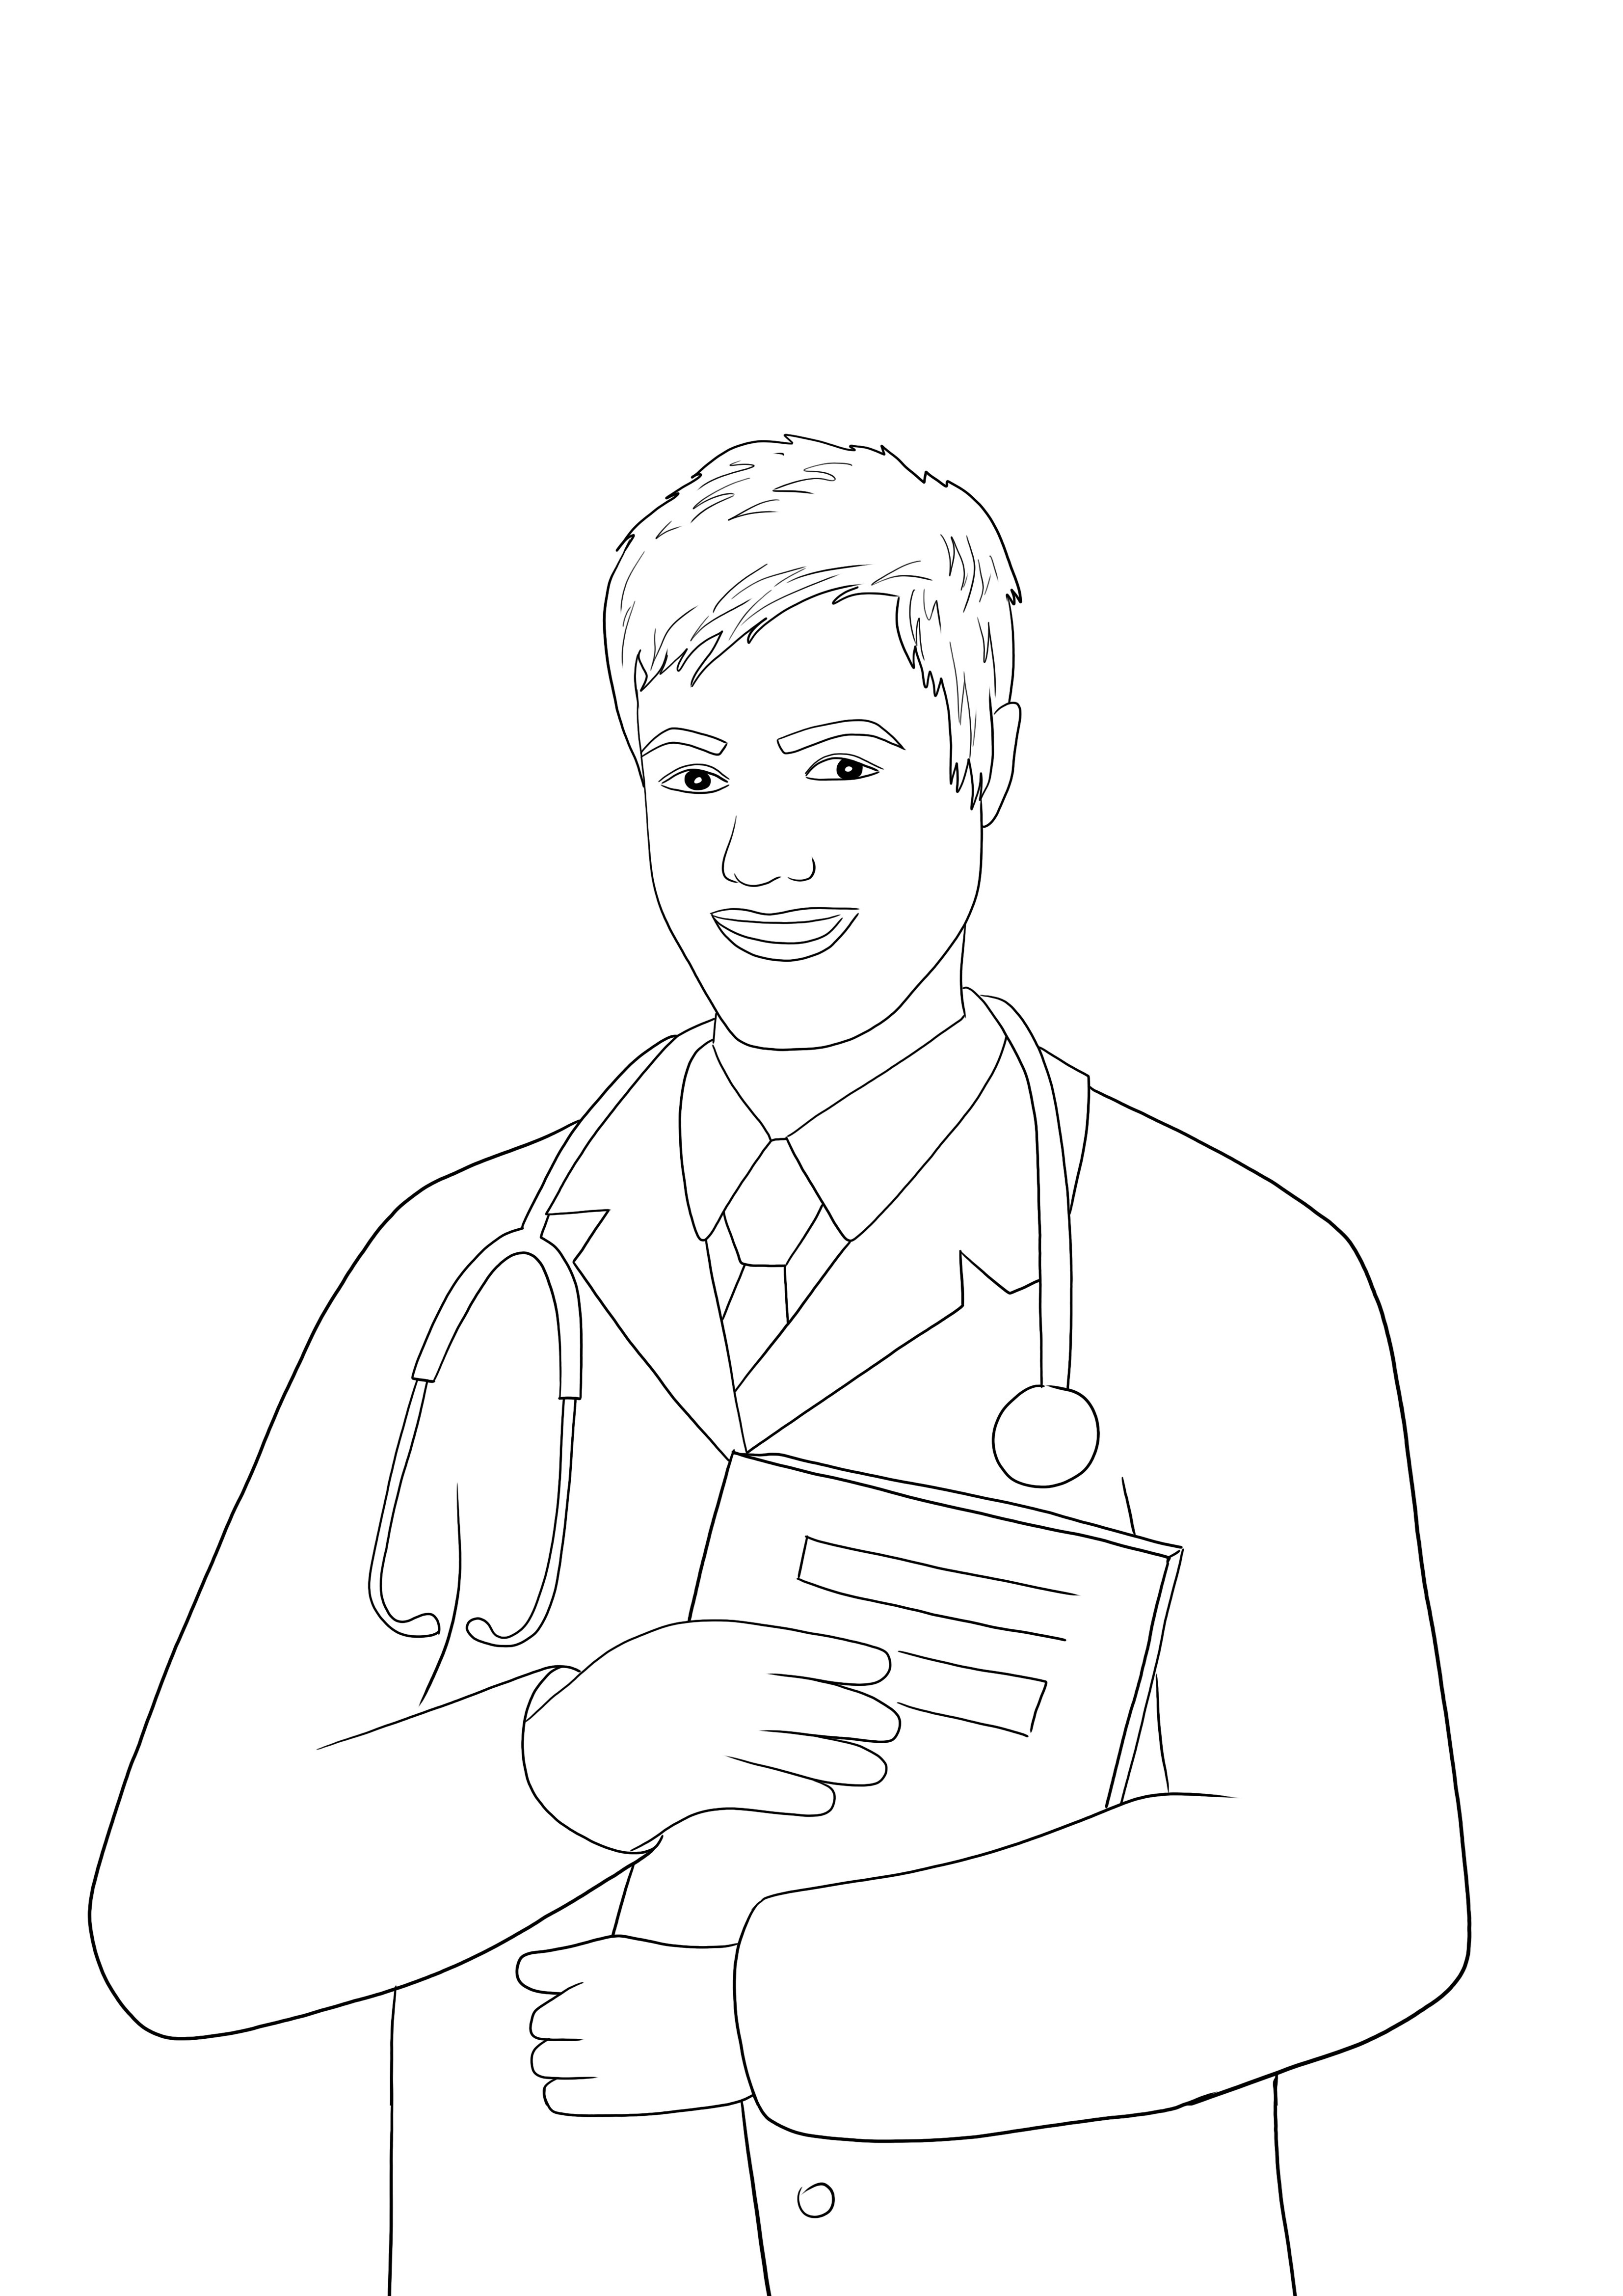 Una imagen para colorear imprimible gratis de un hombre médico para enseñar sobre profesiones